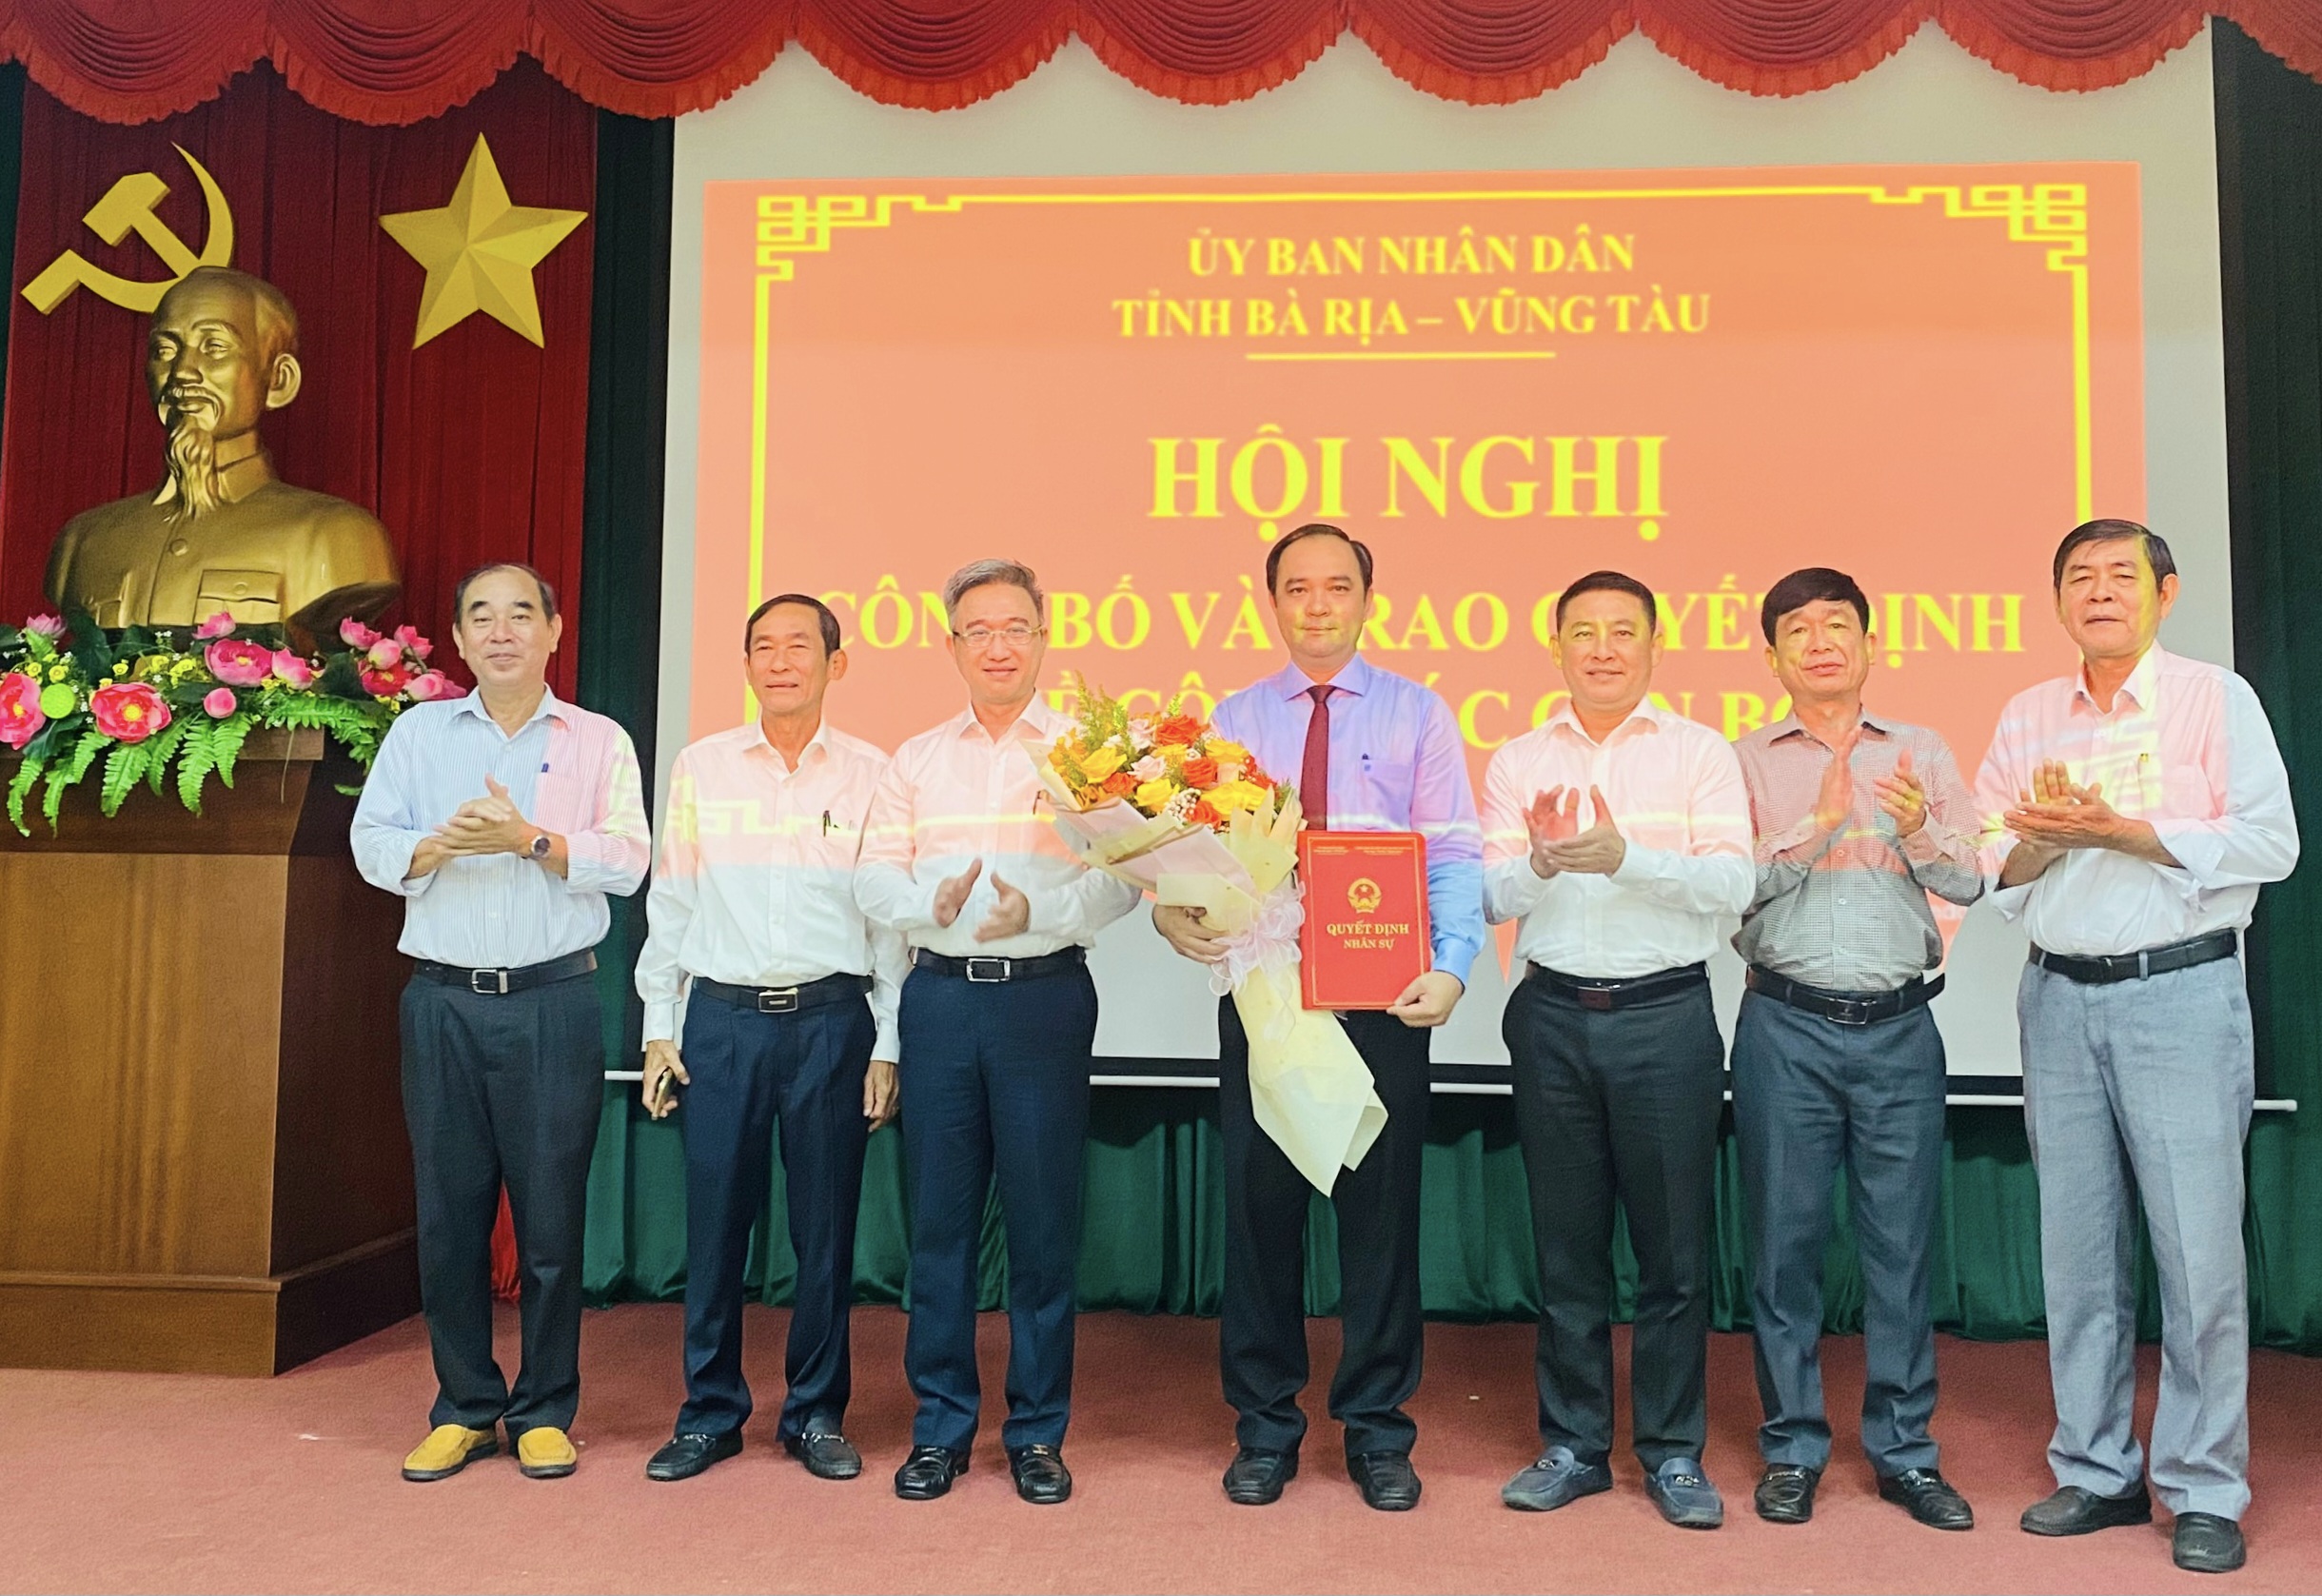 Ông Đặng Minh Thông (thứ 3 từ trái qua), Phó Chủ tịch UBND tỉnh; ông Huỳnh Sơn Tuấn (thứ 3 từ phải qua), Bí thư Huyện ủy Long Điền trao quyết định và tặng hoa chúc mừng ông Lê Hữu Hiền.